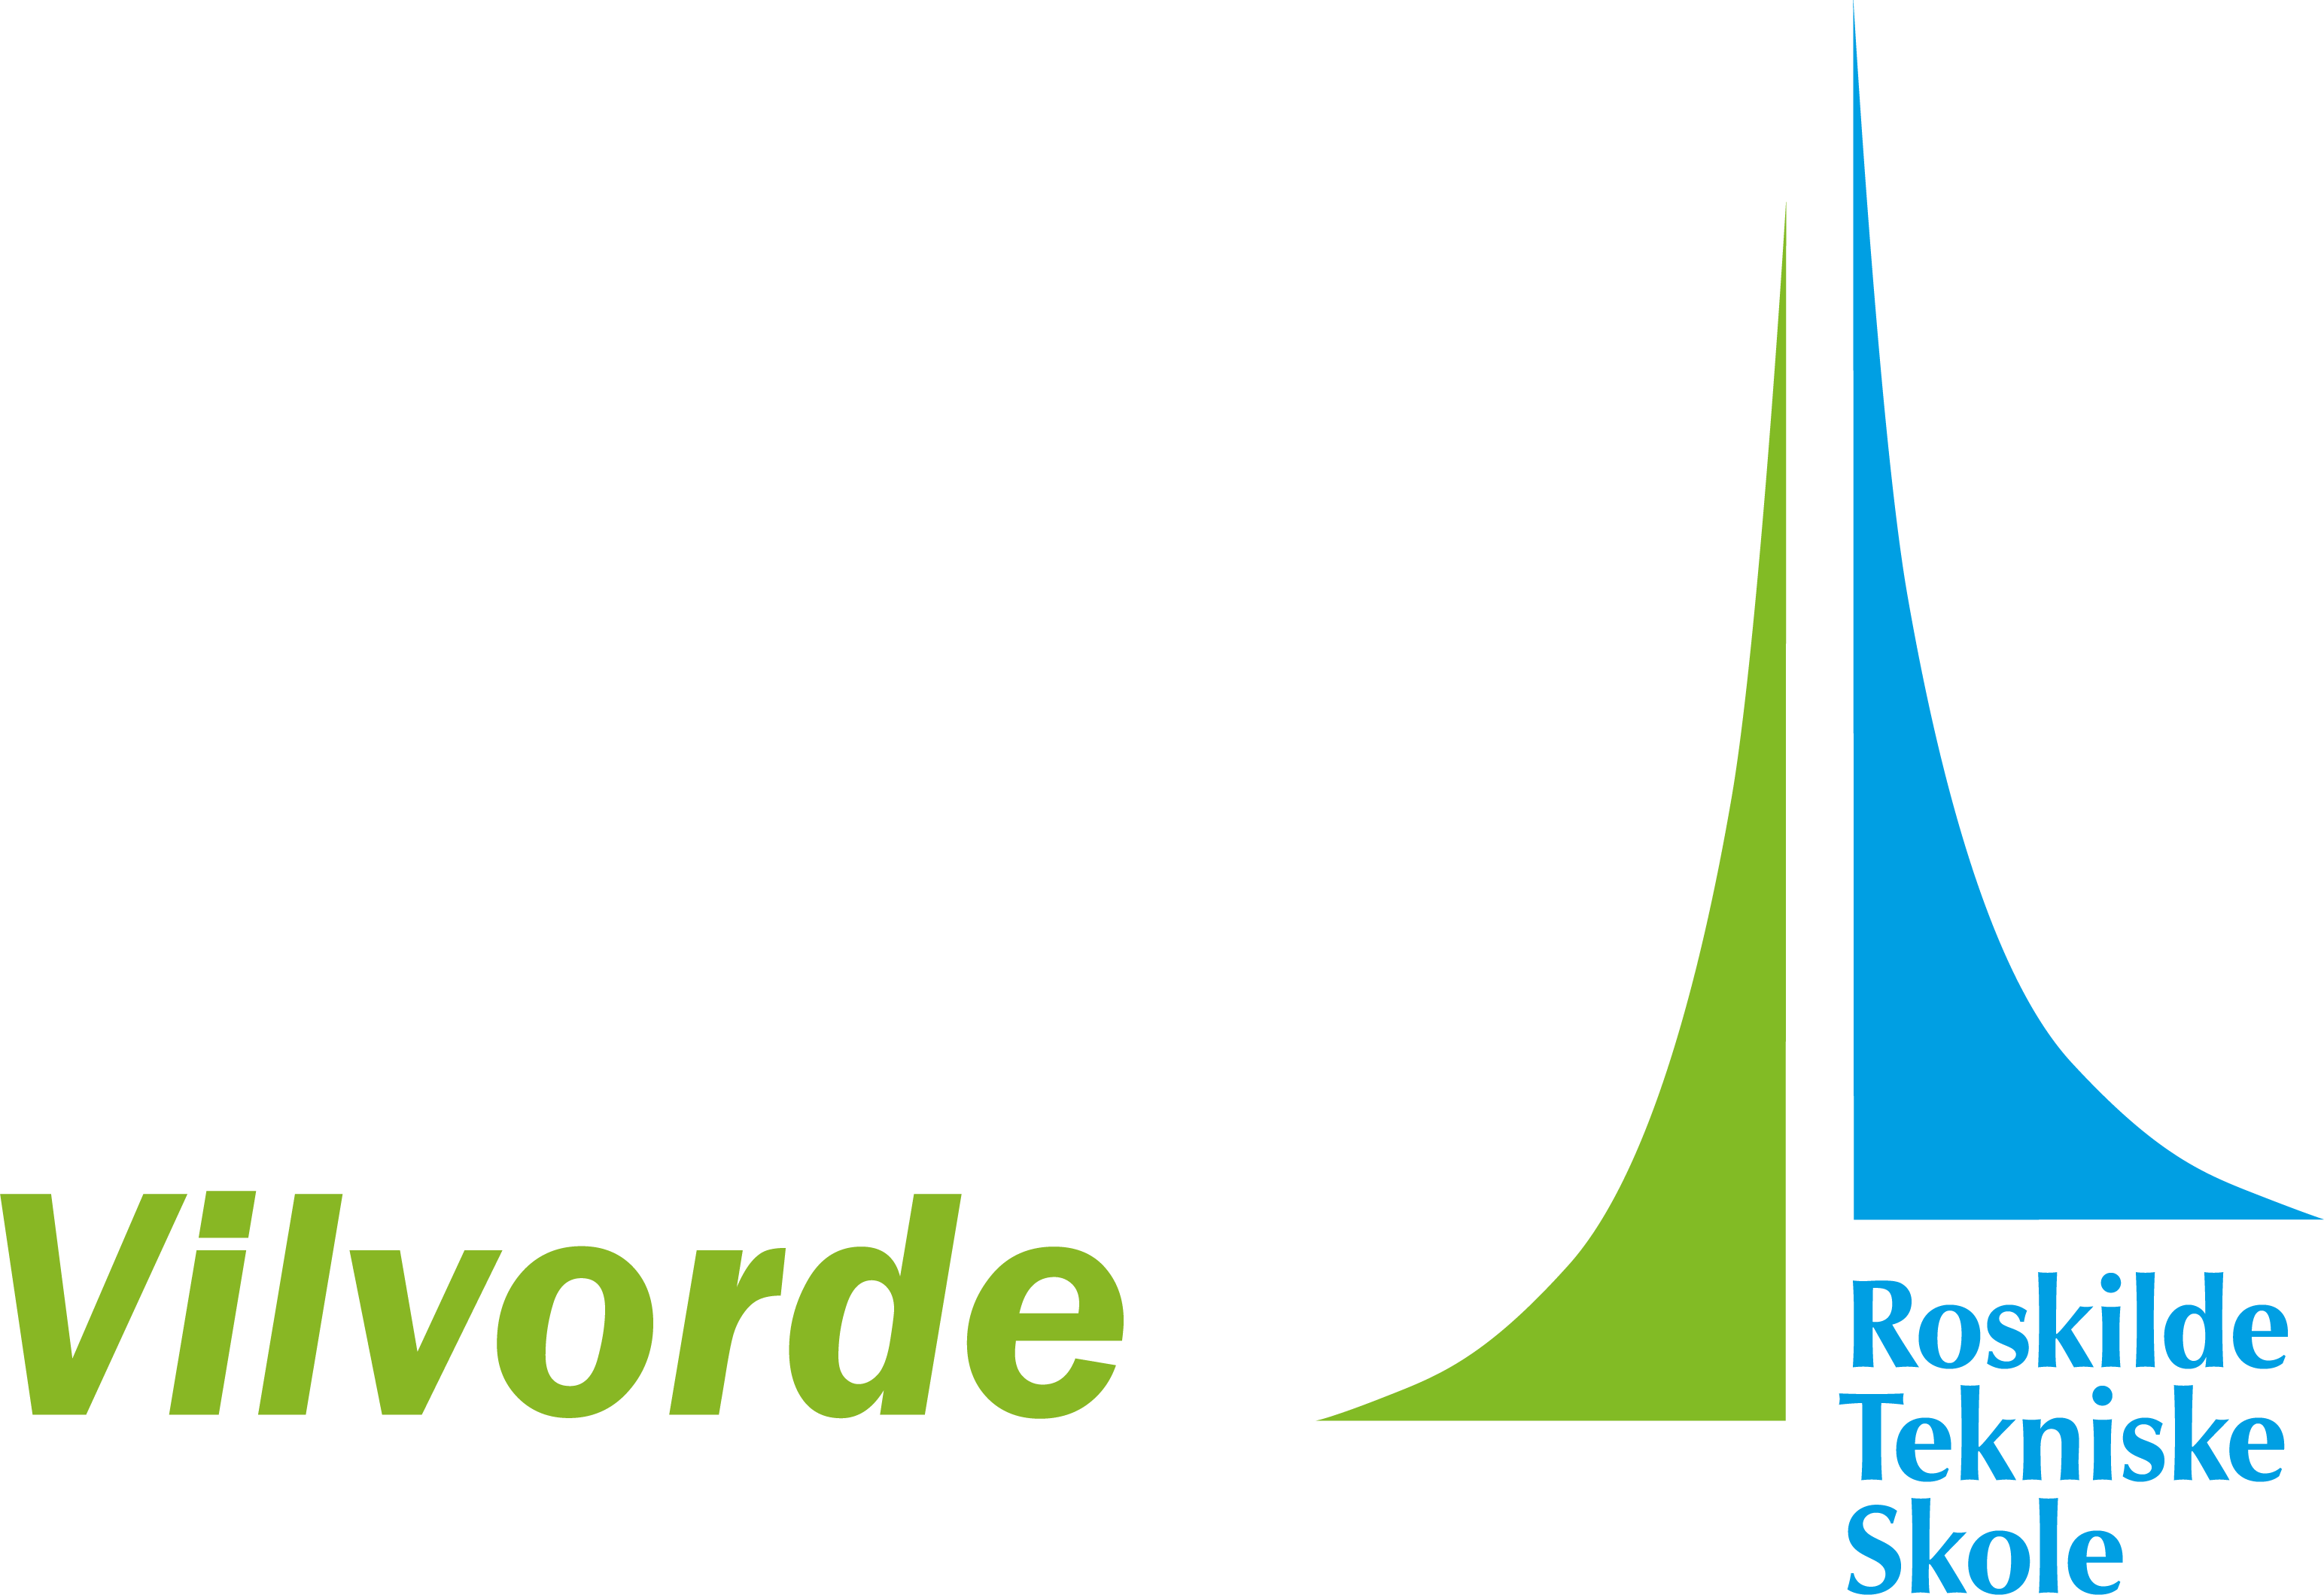 Roskilde Tekniske Skole Vilvorde, logo